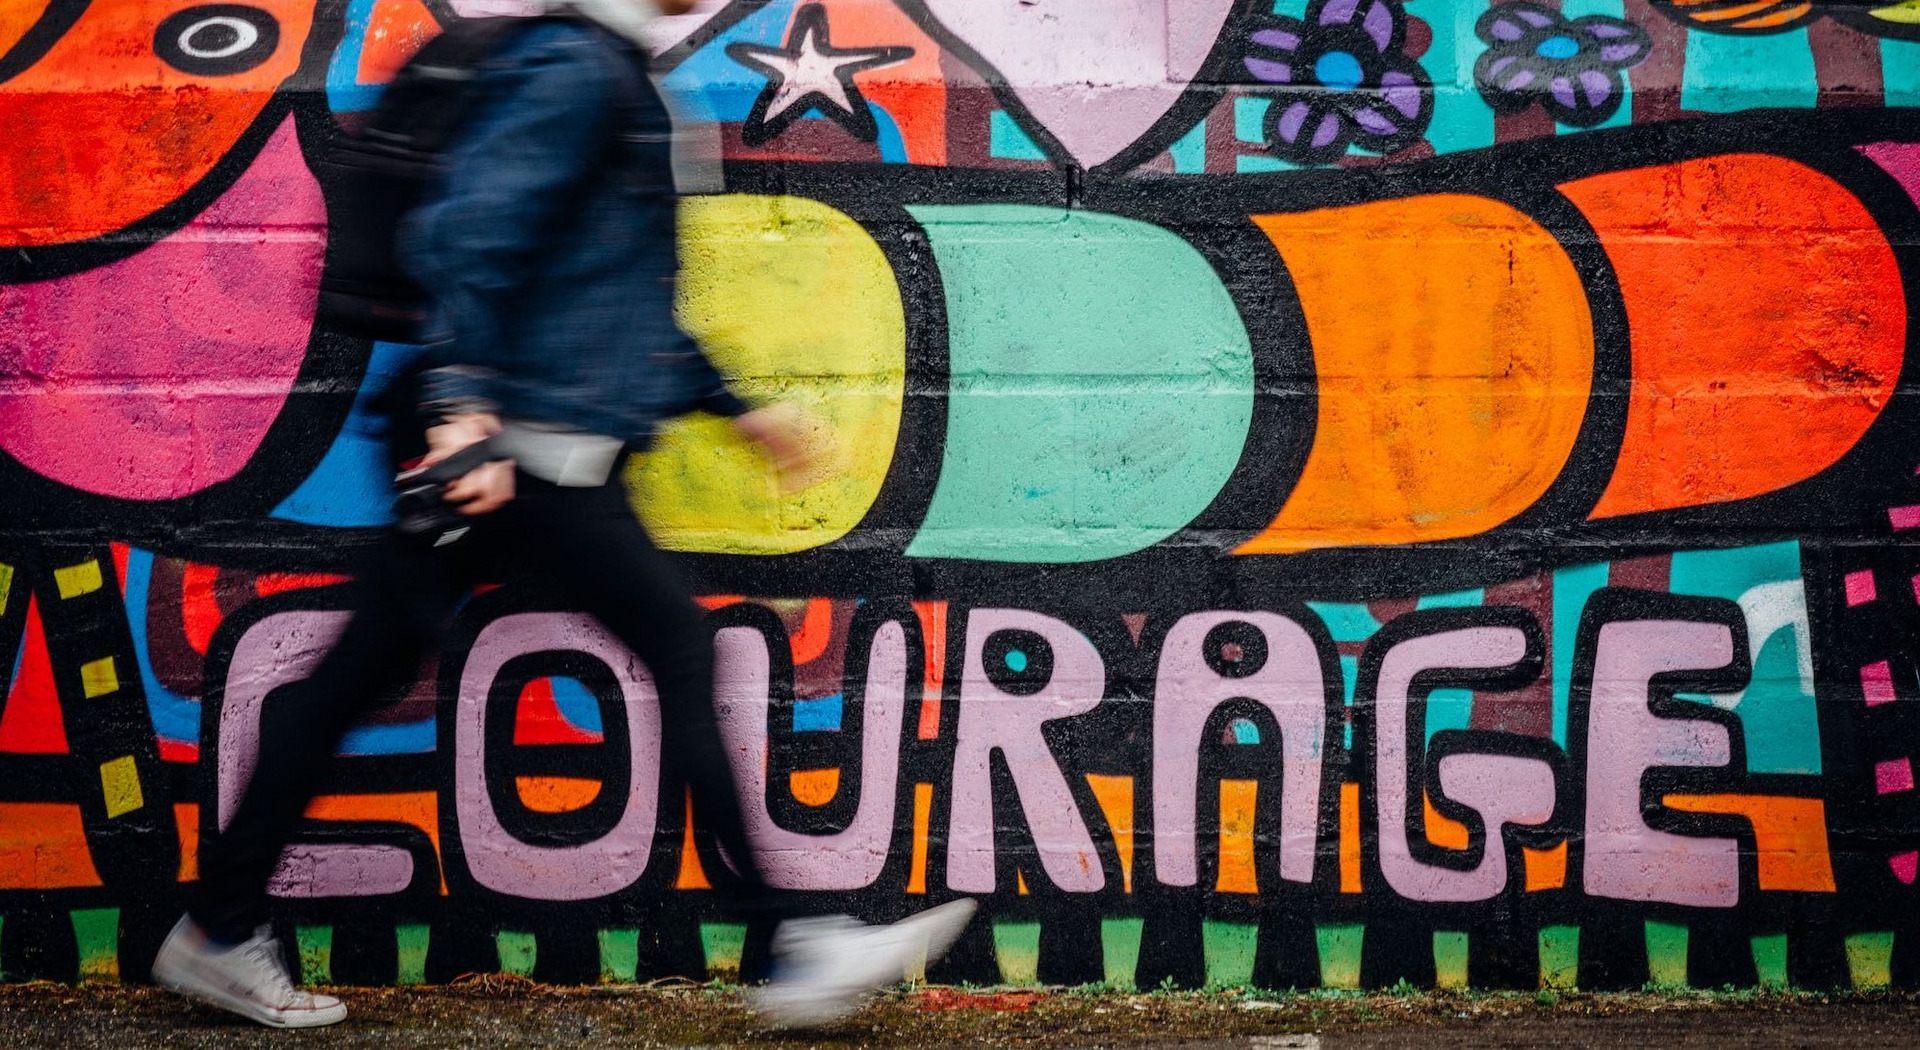 Eine Person läuft an einer Wand vorbei, auf der "Courage" steht